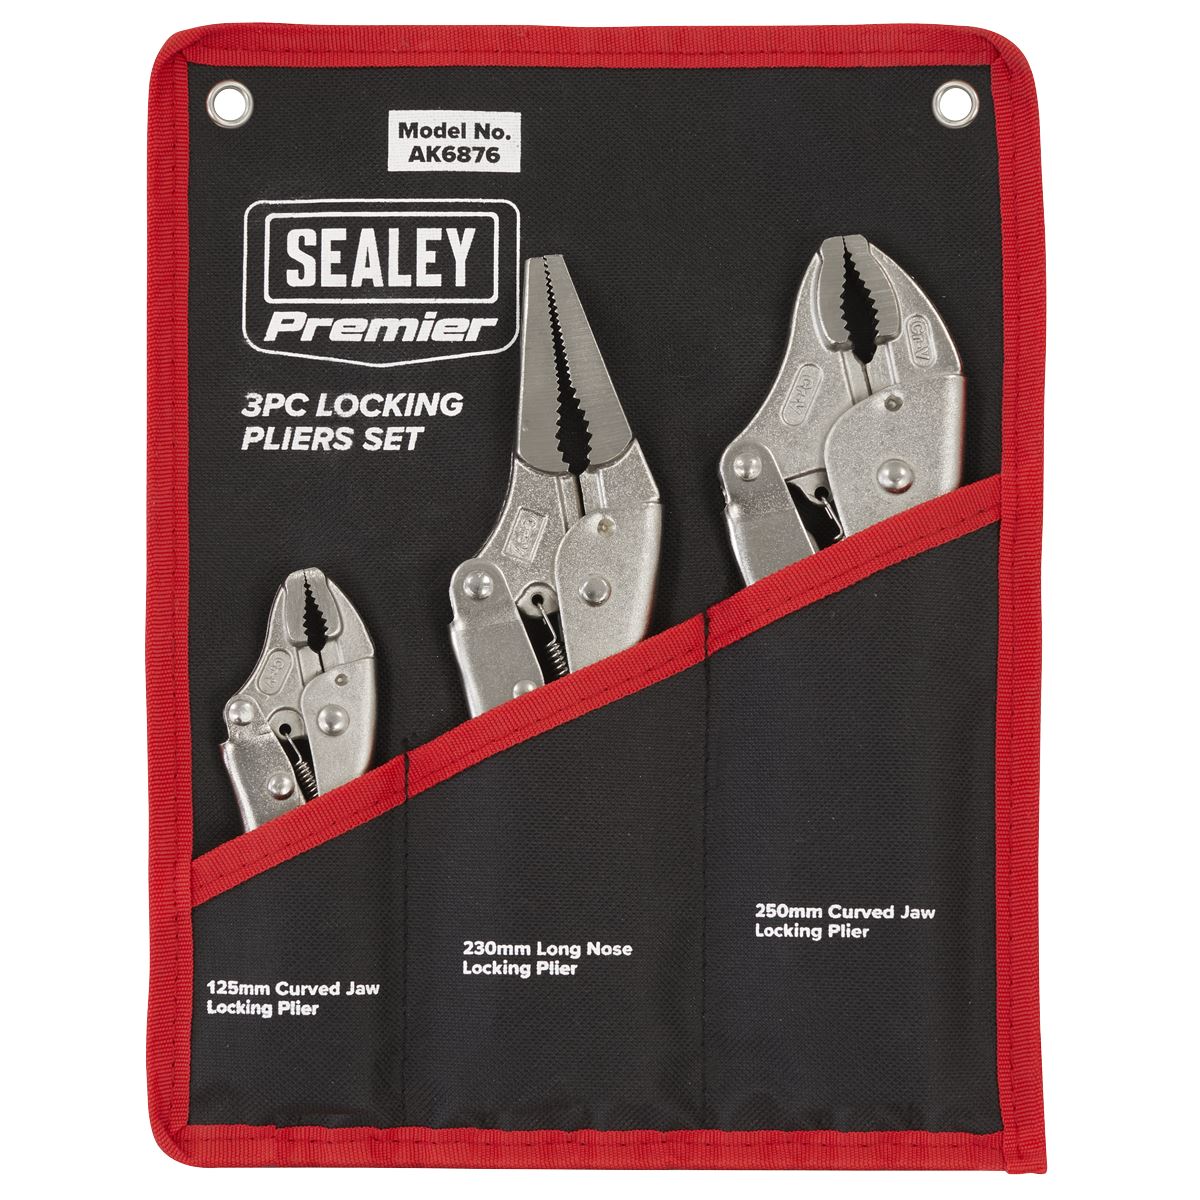 Sealey Locking Pliers Set 3pc AK6876